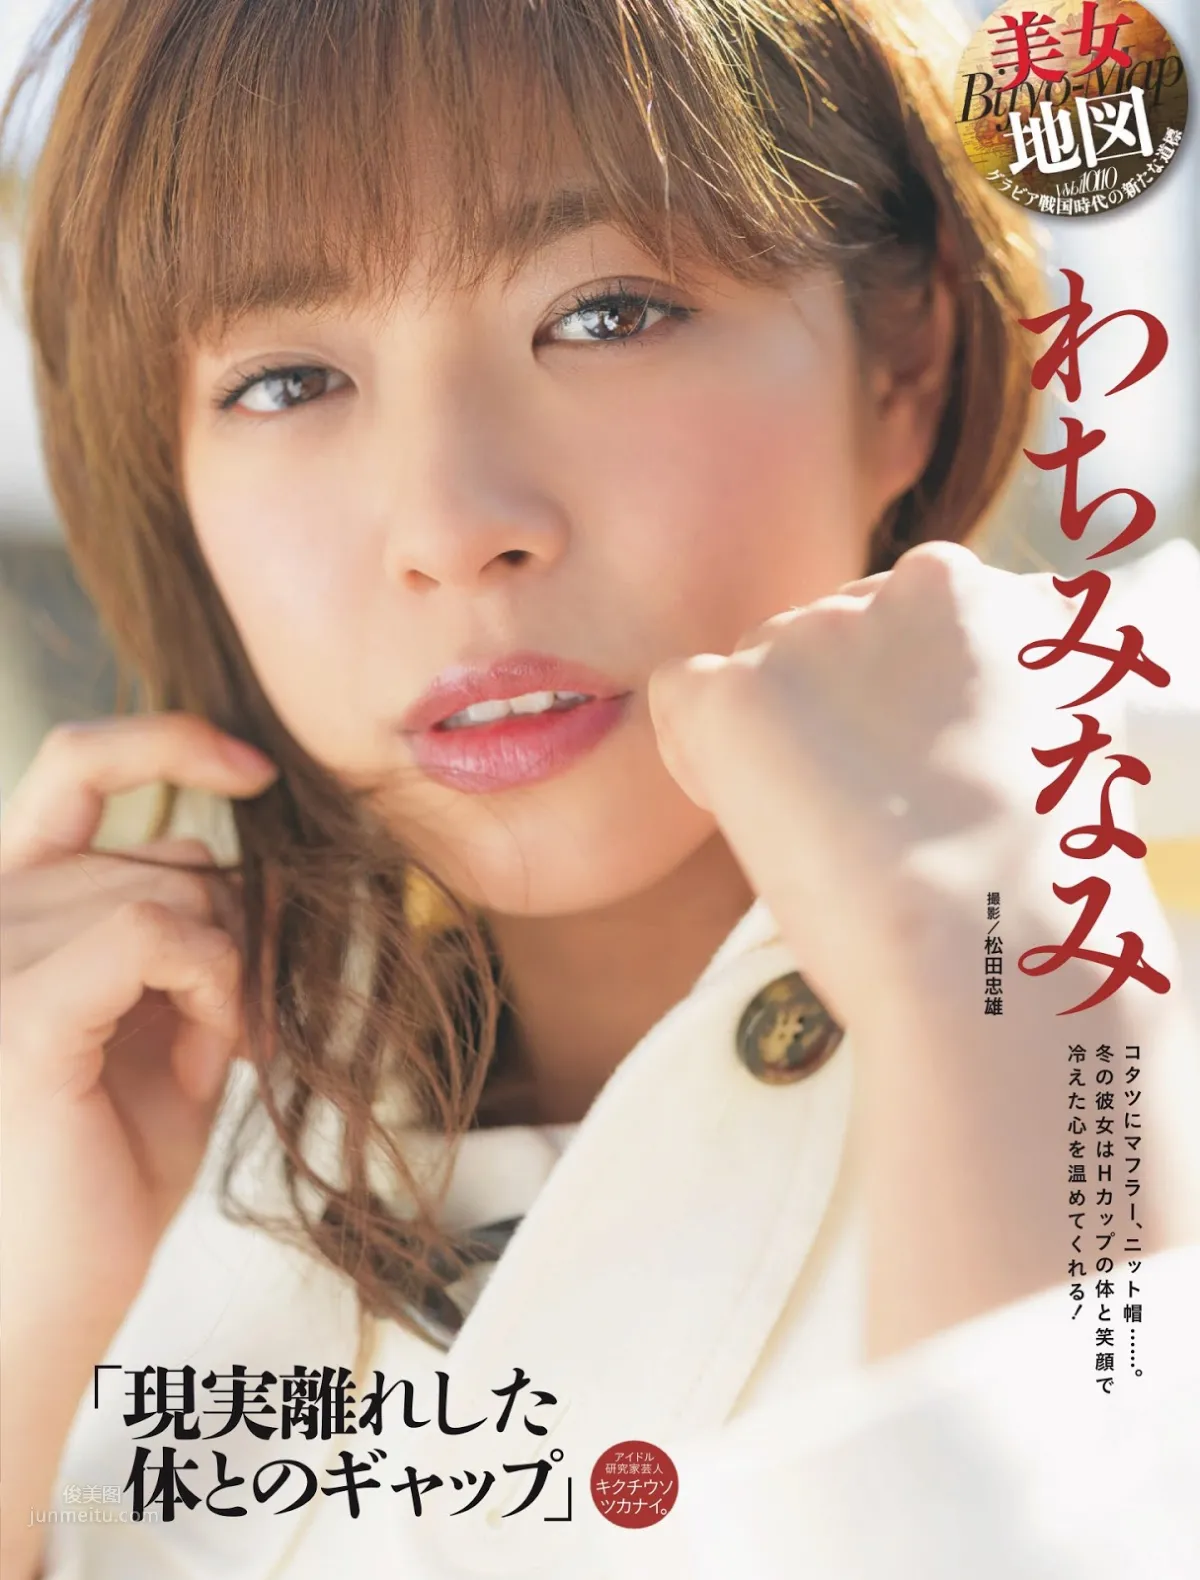 和智みなみ,Wachi Minami - Young Magazine, FLASH, Weekly SPA!, 2019_0